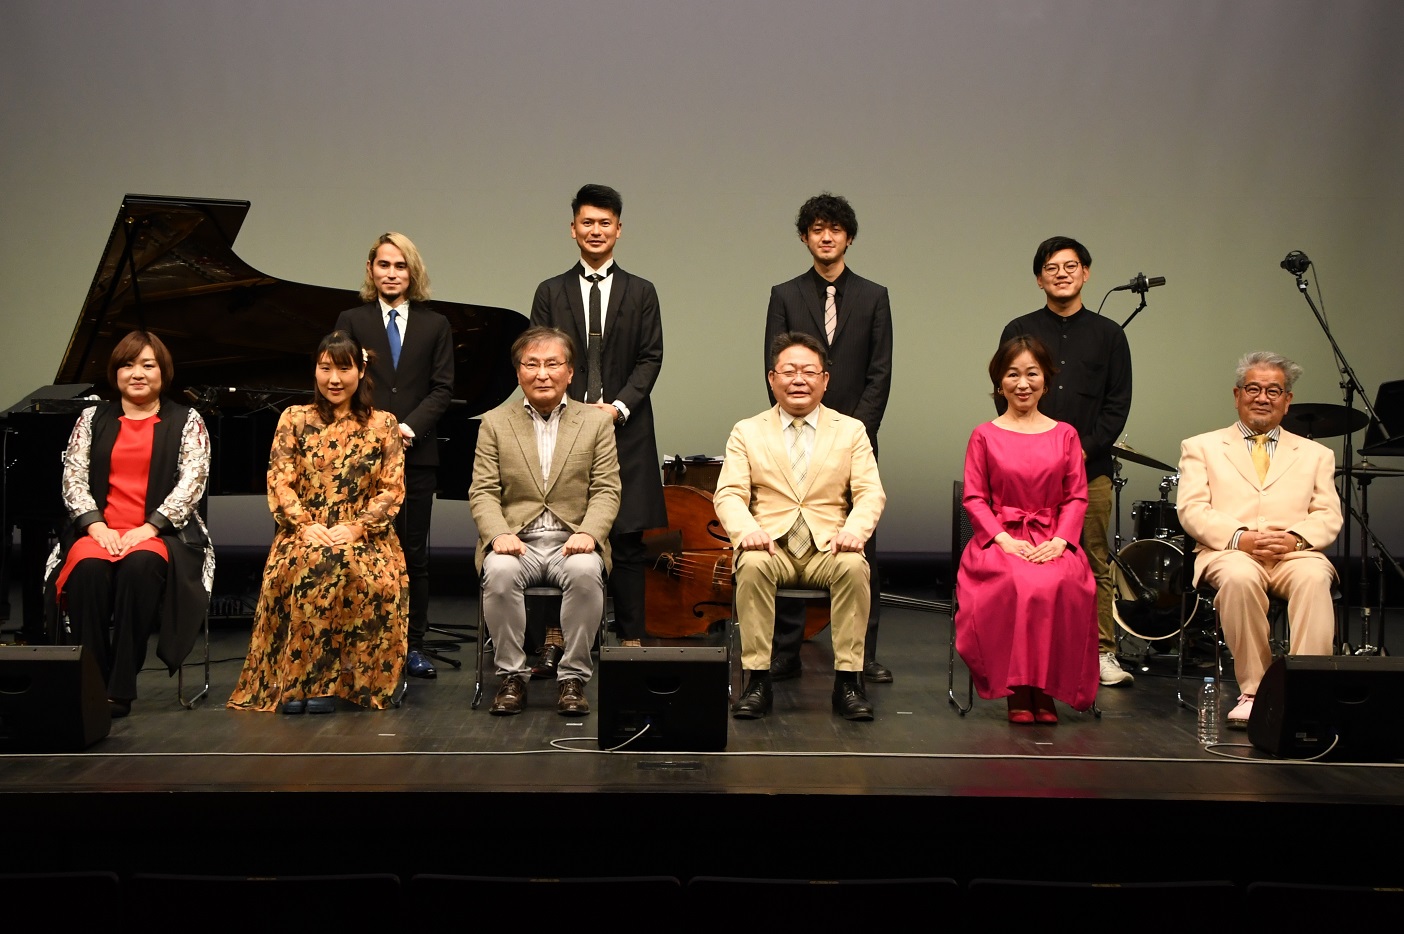 アクネ大使ミュージックフェスティバルに出演いただいたアクネ大使の皆さまと西平市長、松崎副市長の写真